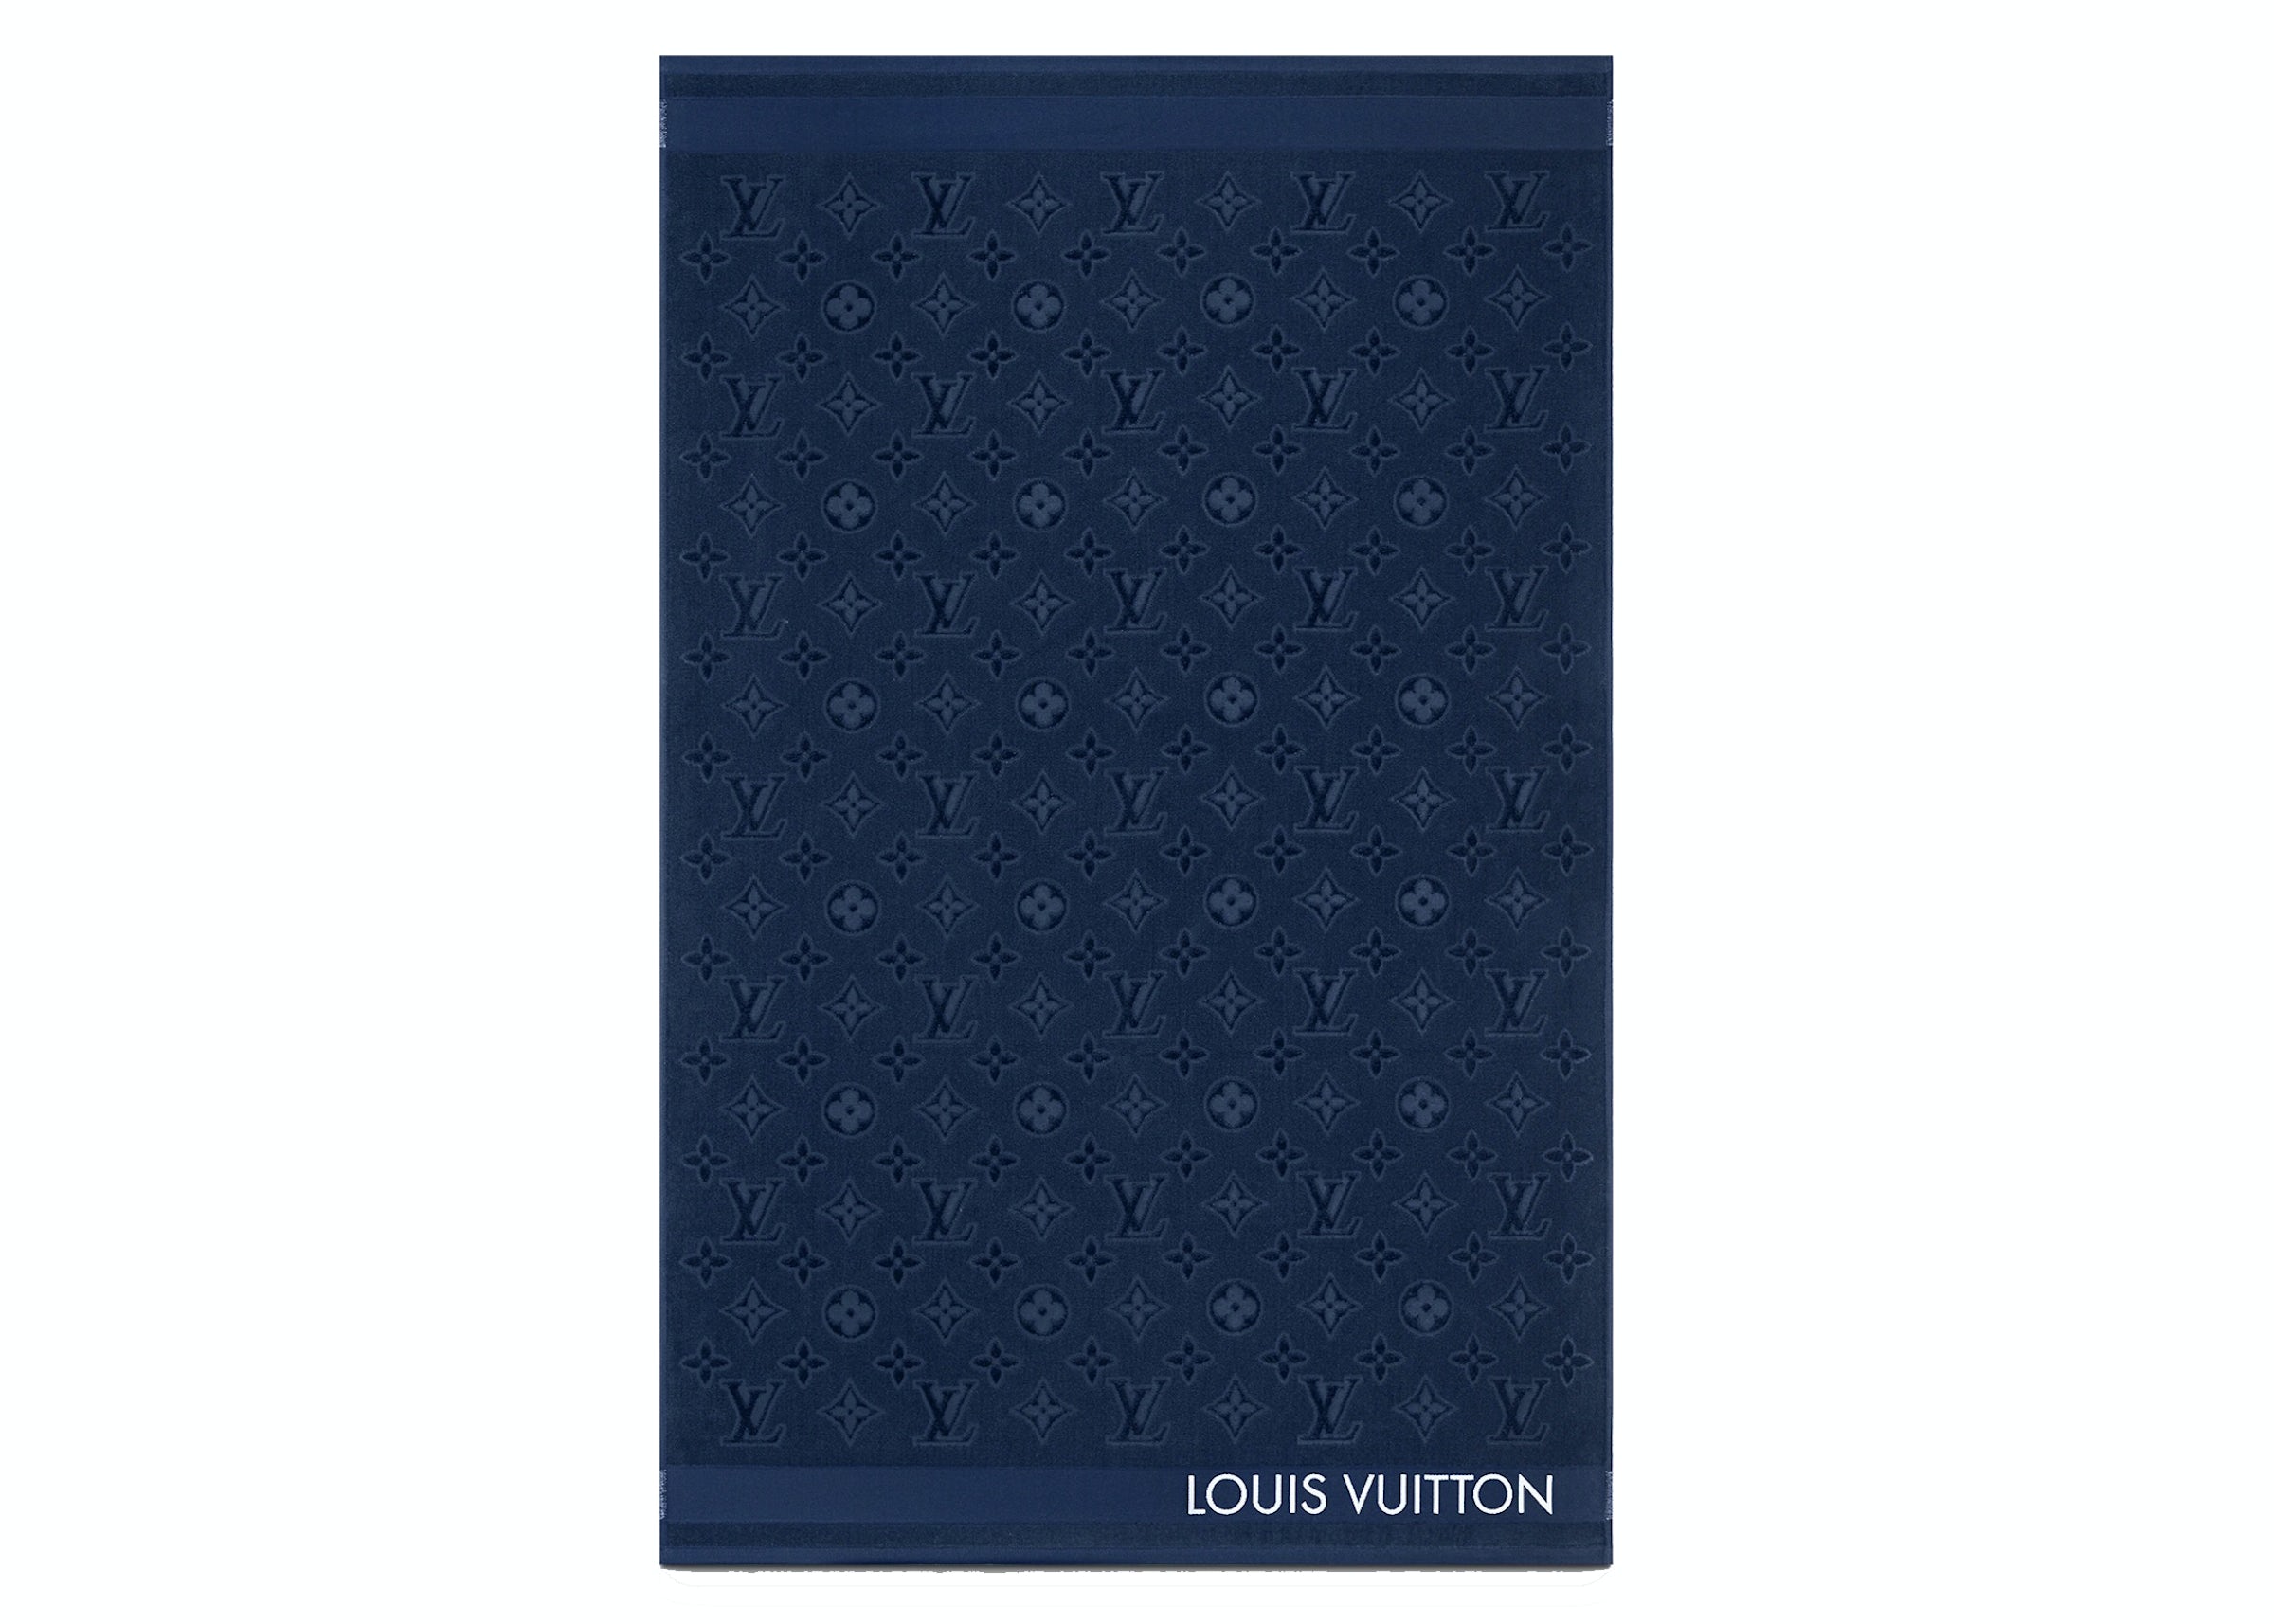 LOUIS VUITTON black LV towel logo blue tropical leaf print cotton